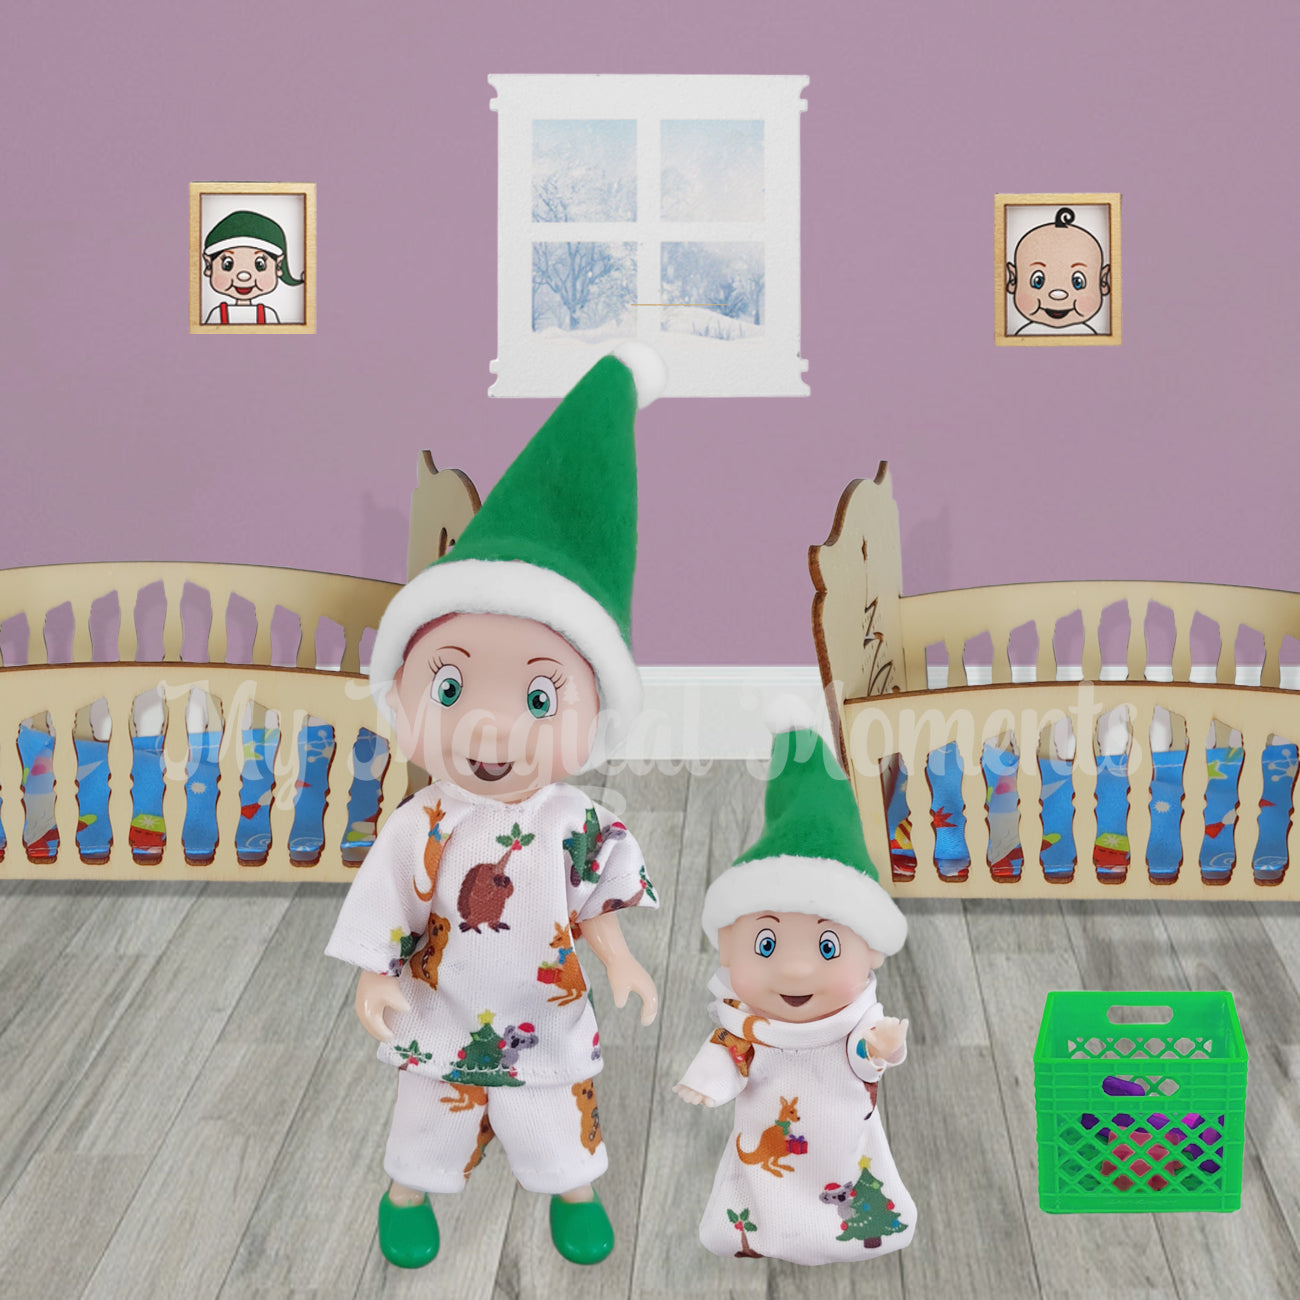 Elf toddler and elf baby wearing matching sleepwear